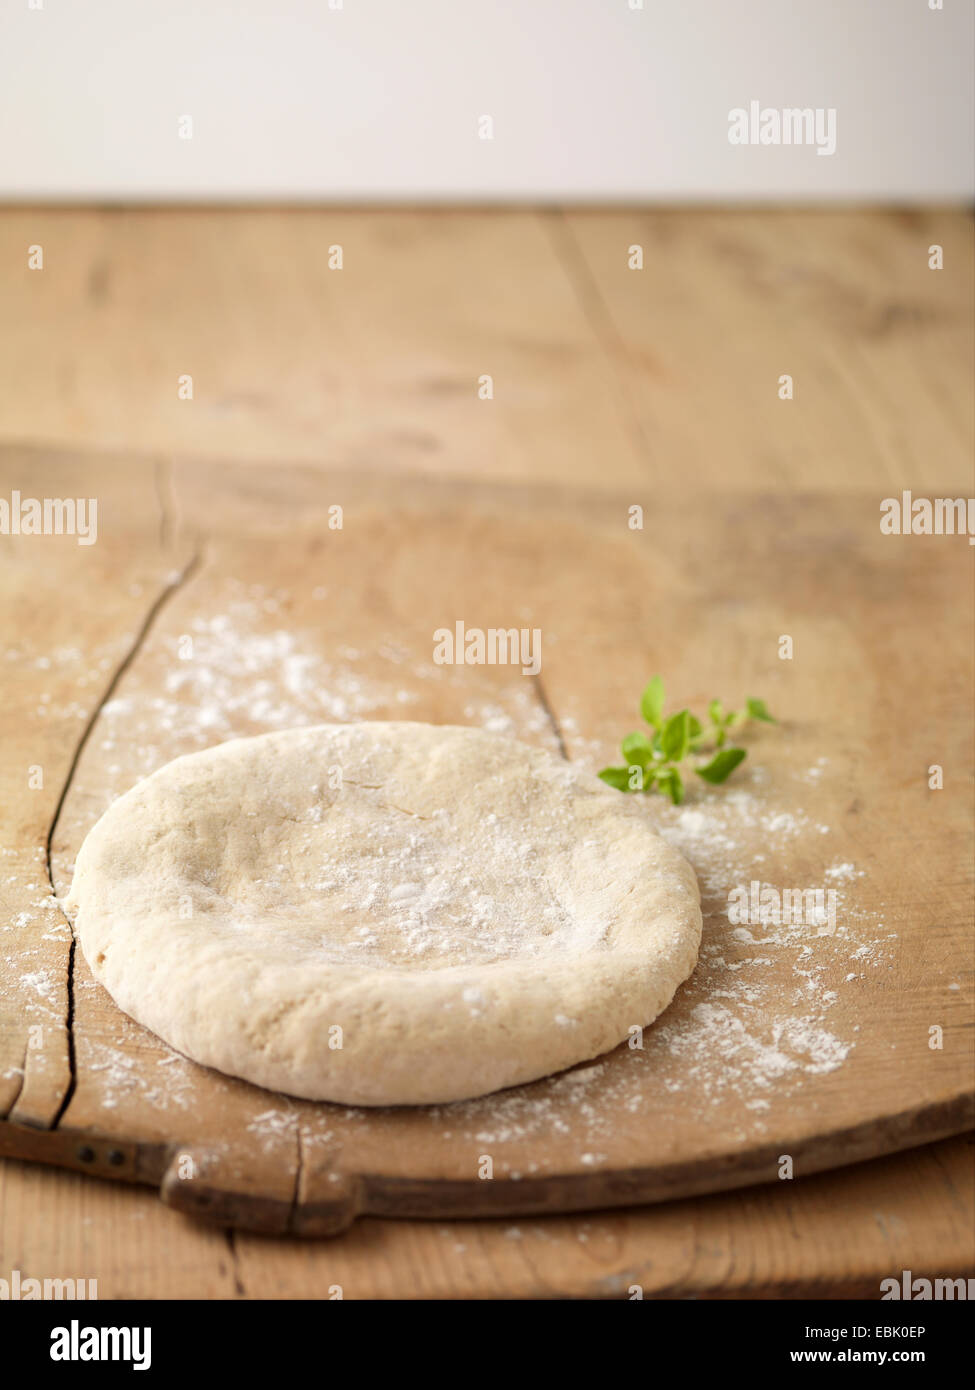 Círculo de masa para pizza preparada sobre una tabla de cortar espolvoreado con harina Foto de stock